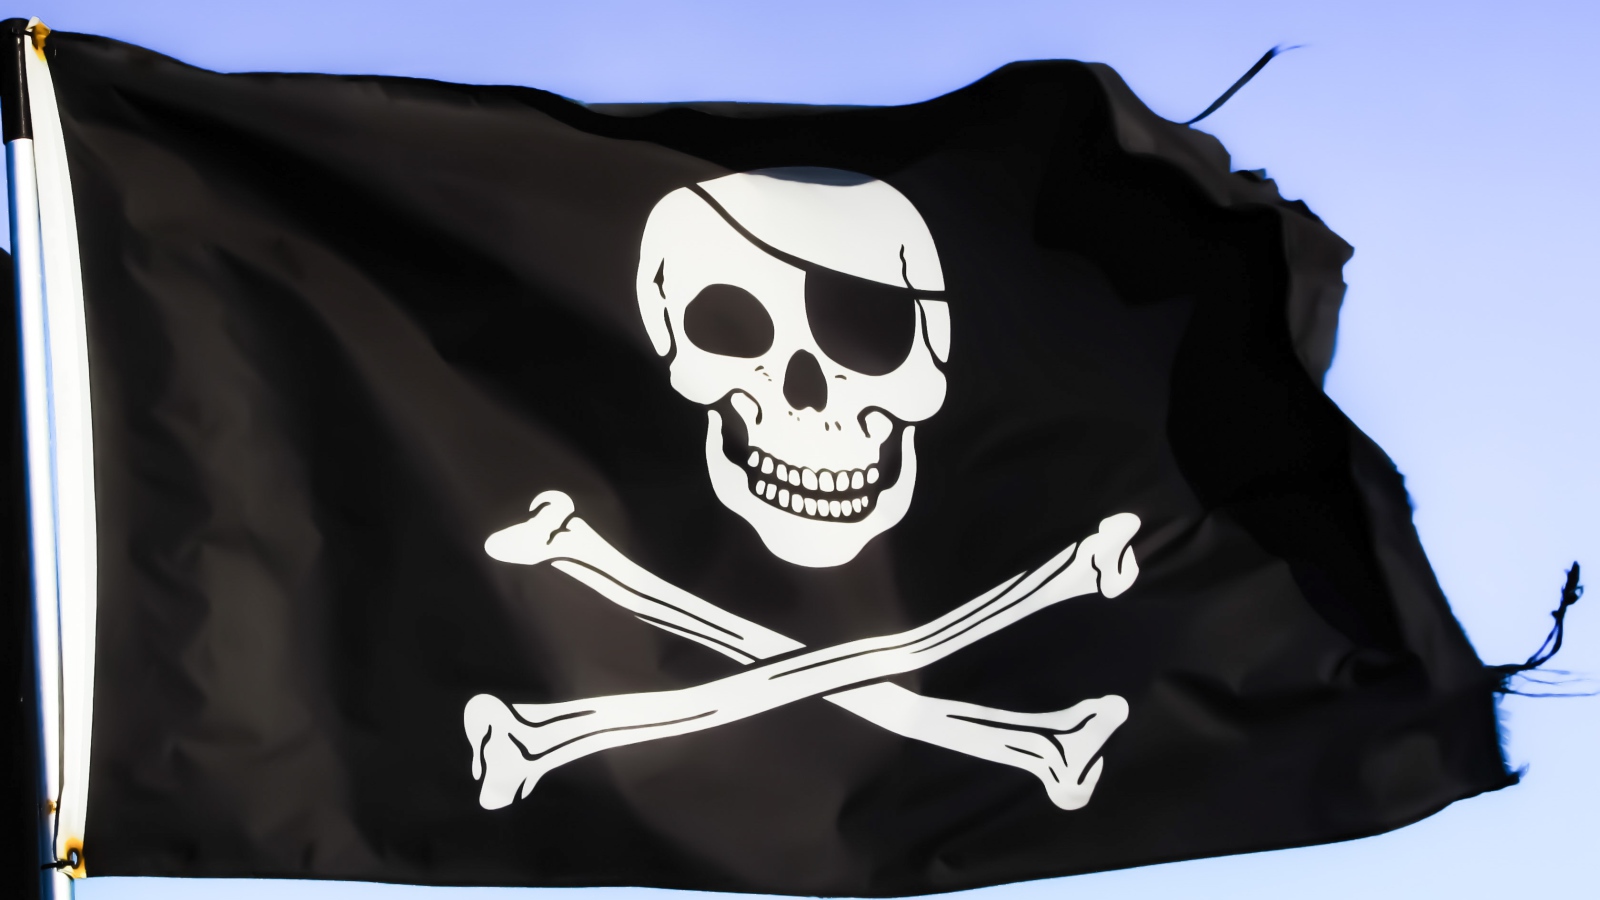 Pirate black flag with white skull